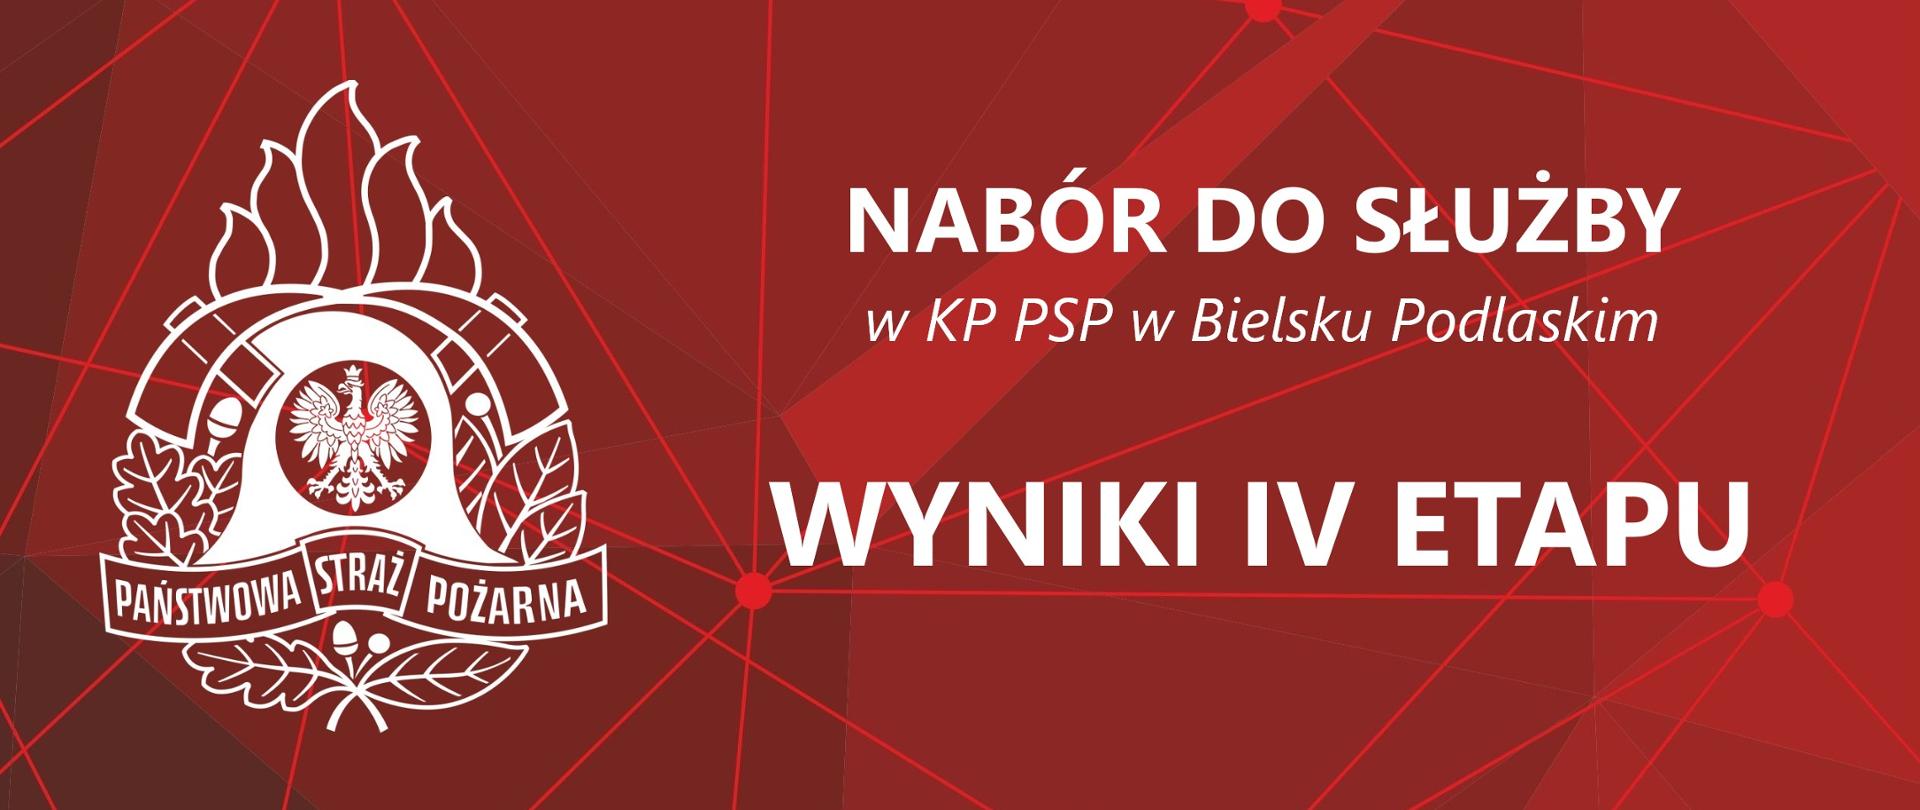 Baner z logo PSP i Napisem: Nabór do służby w KP PSP w Bielsku Podlaskim - Wyniki IV etapu